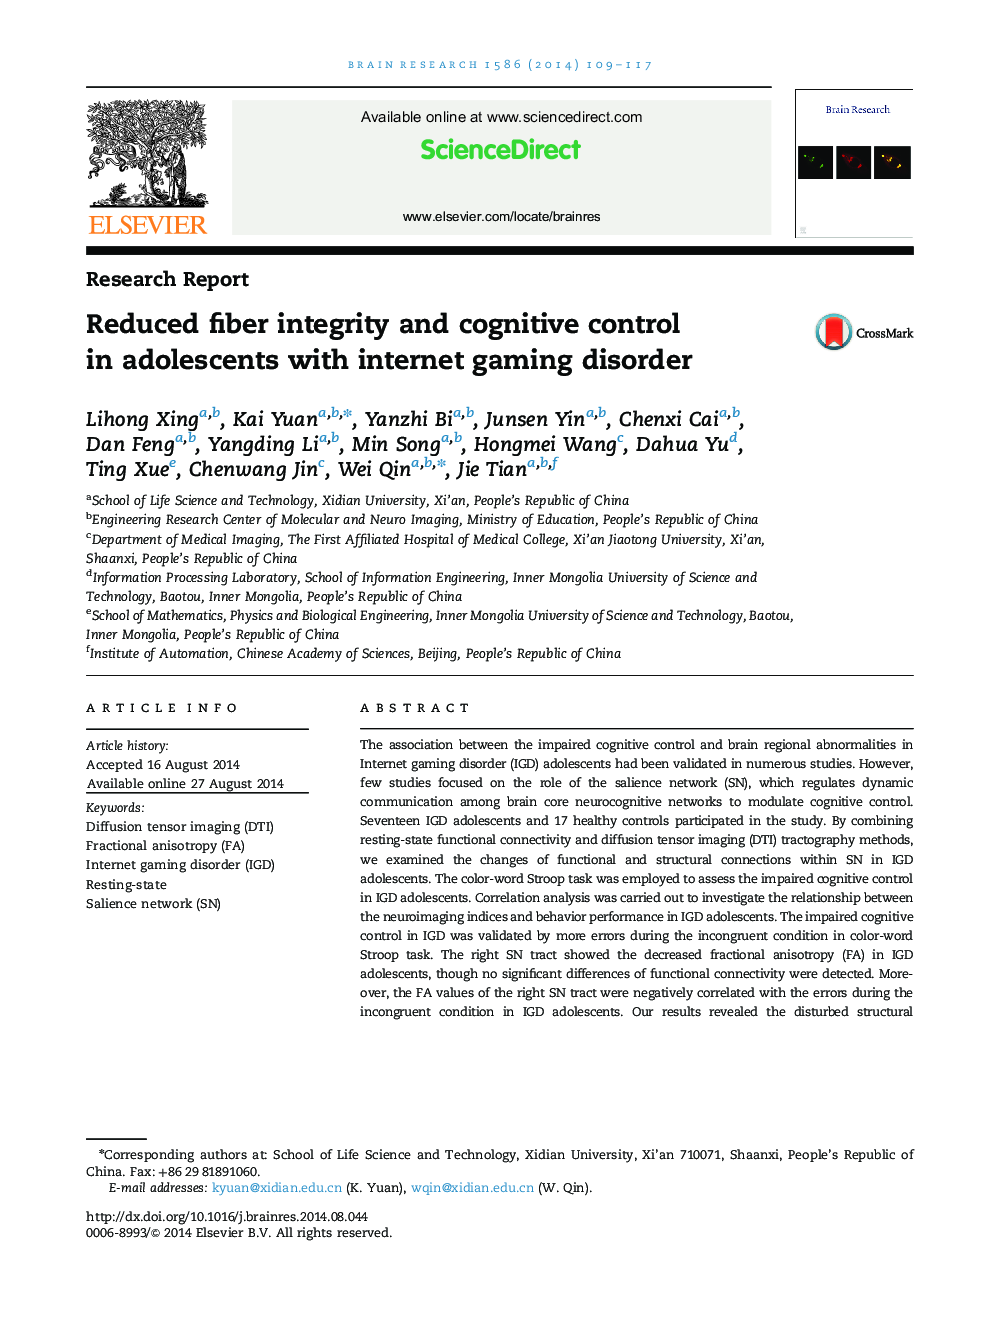 گزارش تحقیقاتی یکپارچگی الیه ریشه دار و کنترل شناختی در نوجوانان مبتلا به اختلال بازی در اینترنت 